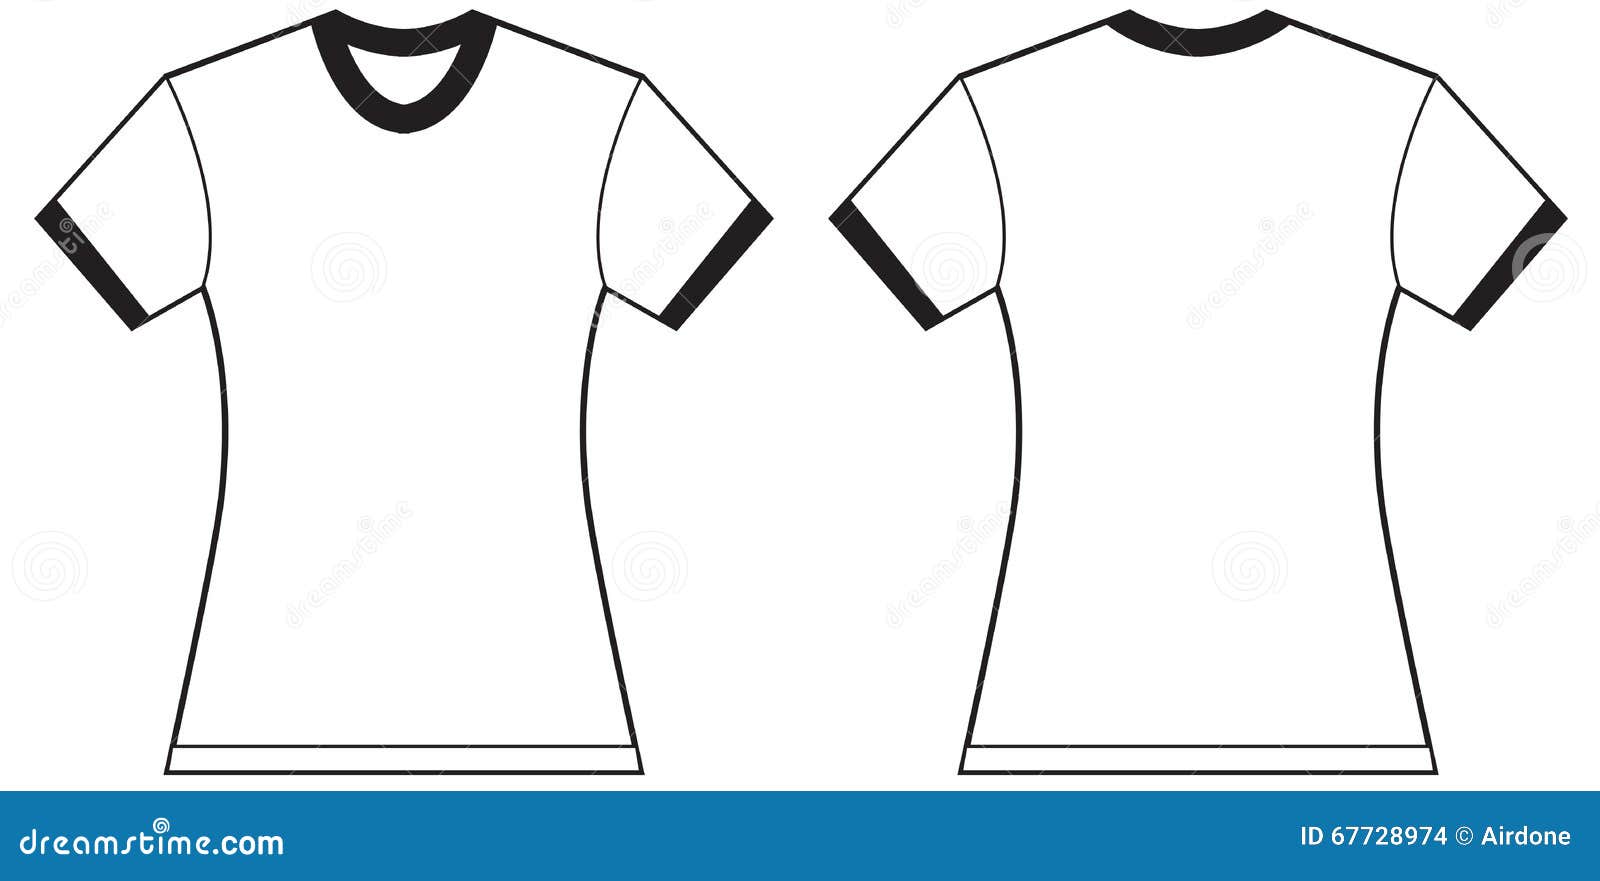 women's ringer t-shirt  template